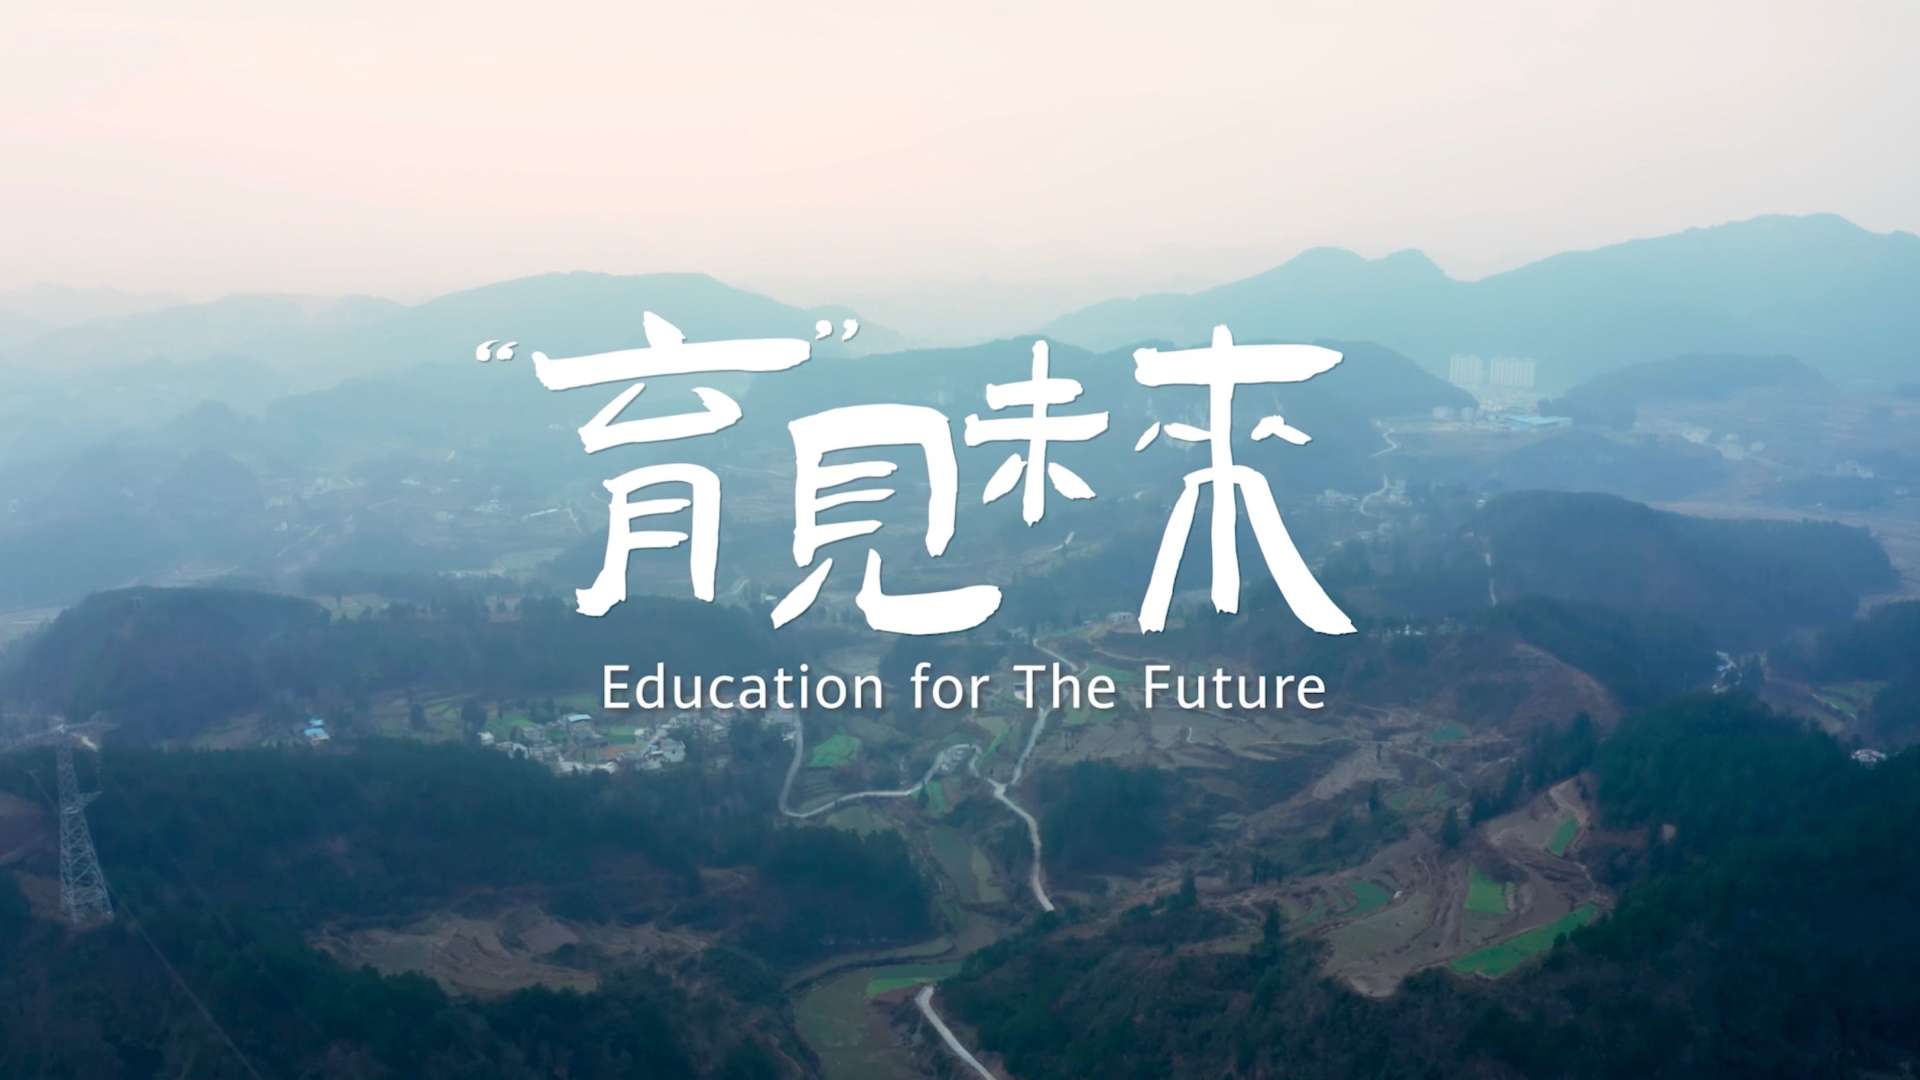 华为数字化教育故事片《育见未来》